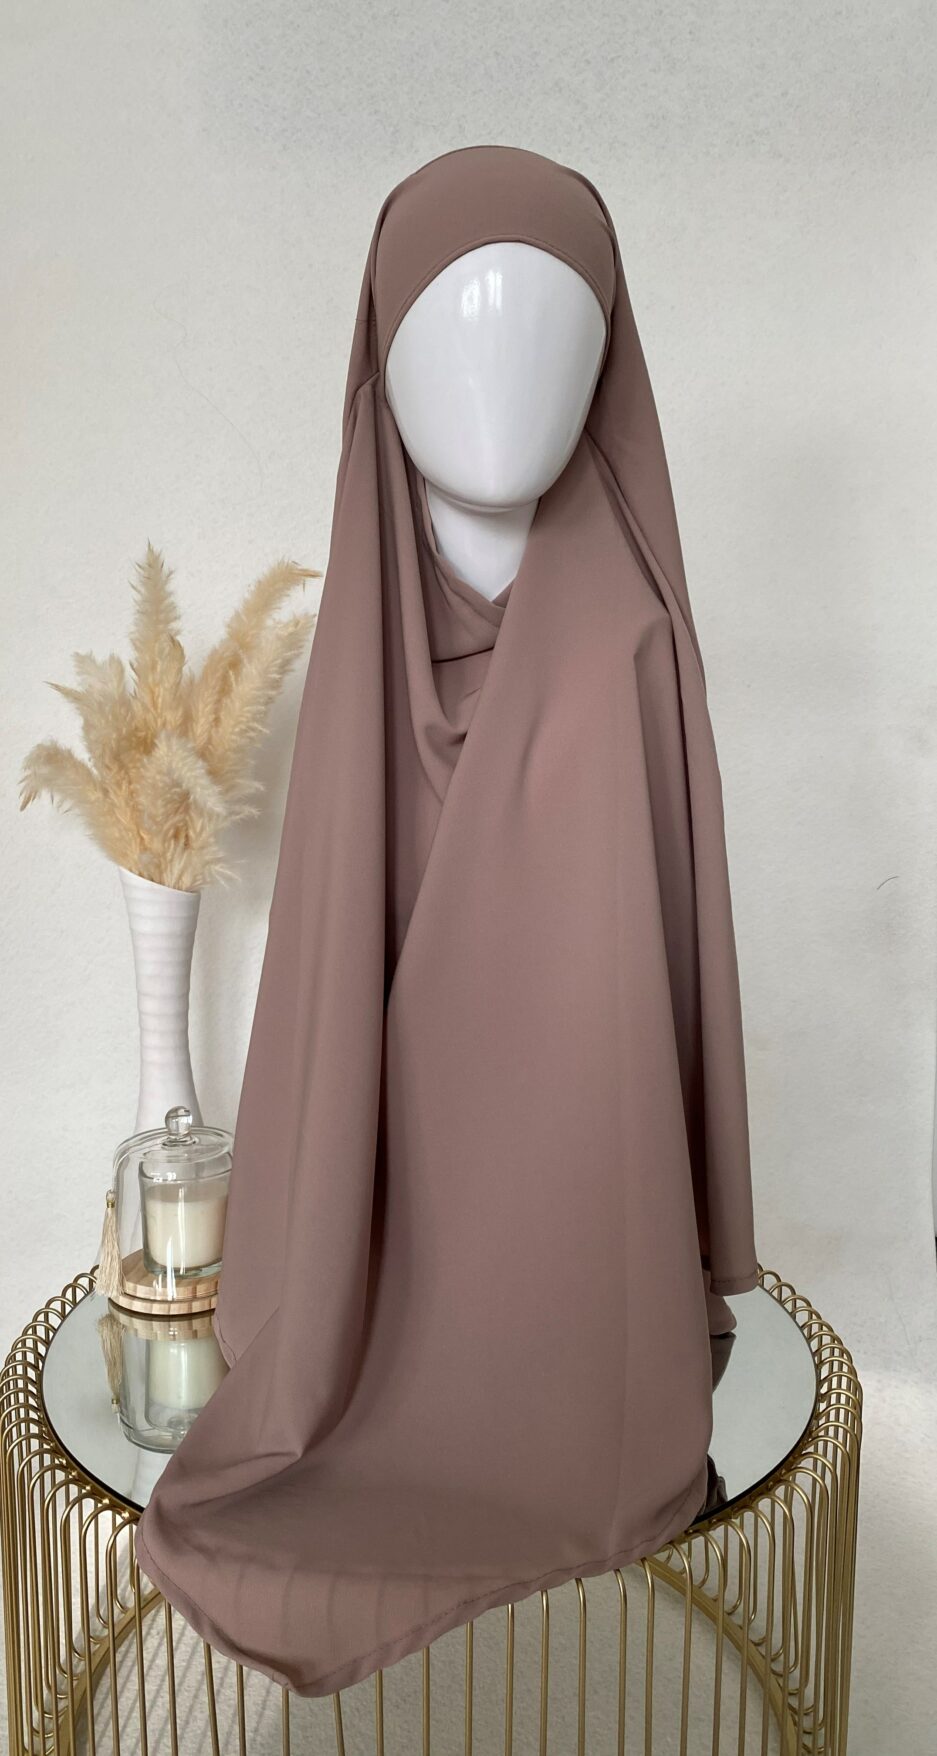 Khimar vieux rose, long hijab pour la femme musulmane voilée, Cendrijab vend en ligne des khimar de bonne qualité et pas cher, la livraison est rapide , Cendrijab propose un large choix de couleurs, vente de khimar en gros et au détails, notre stock est disponible en France